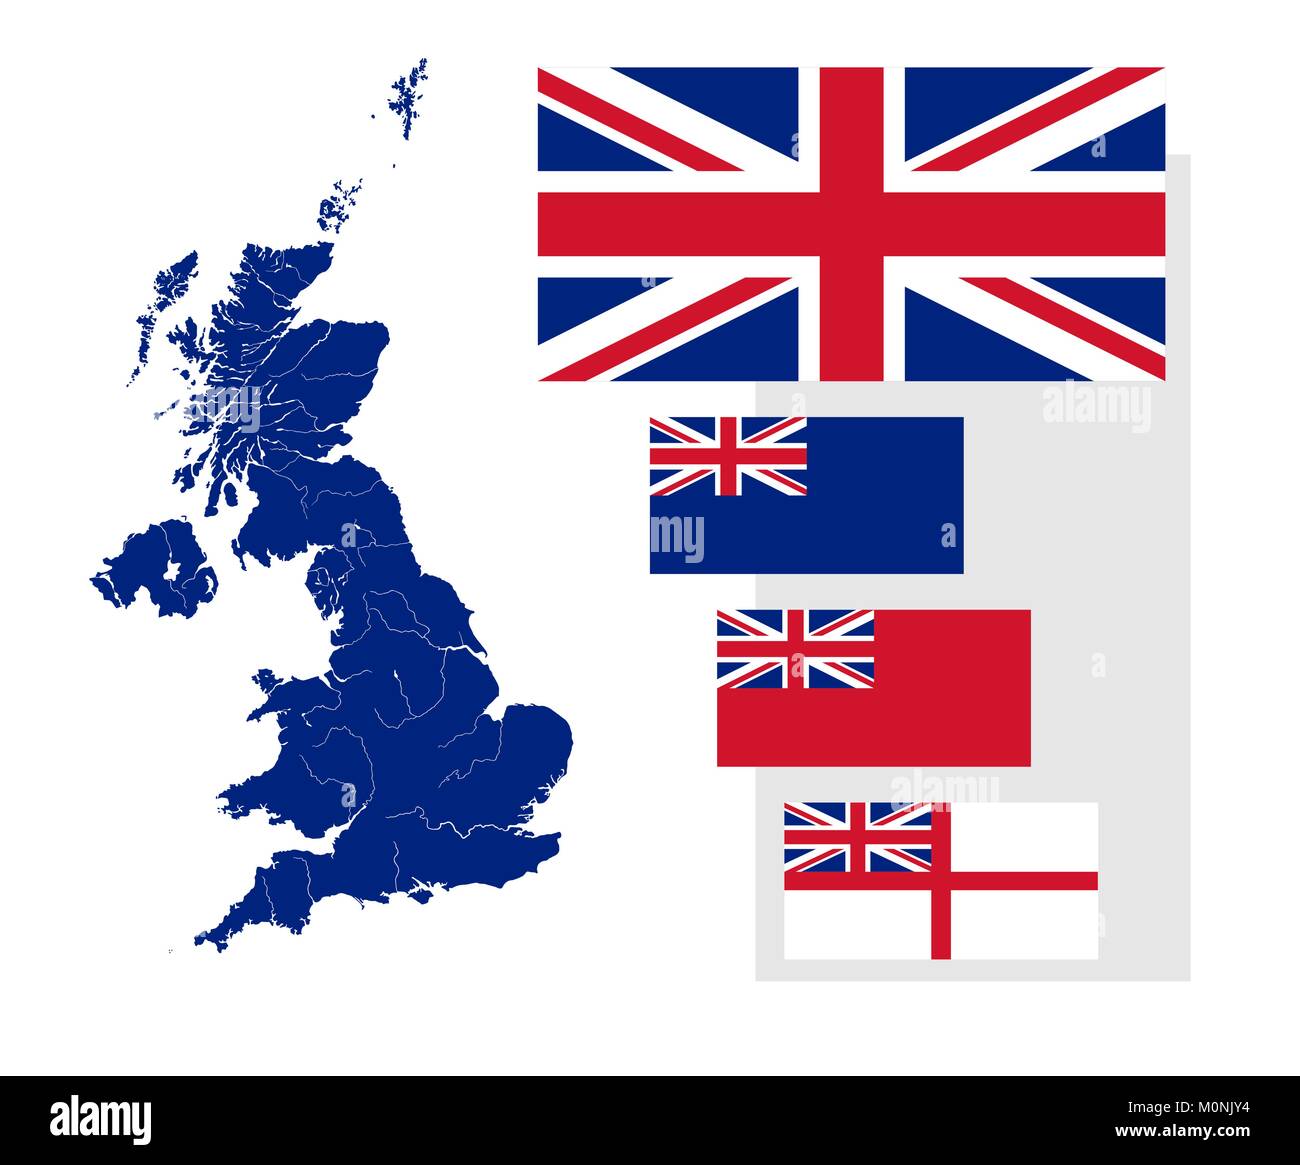 Mappa del Regno Unito con fiumi e quattro bandiere britanniche - bandiera nazionale, stato alfiere, ensign civile e naval ensign. Bandiere ha una corretta progettazione, Illustrazione Vettoriale